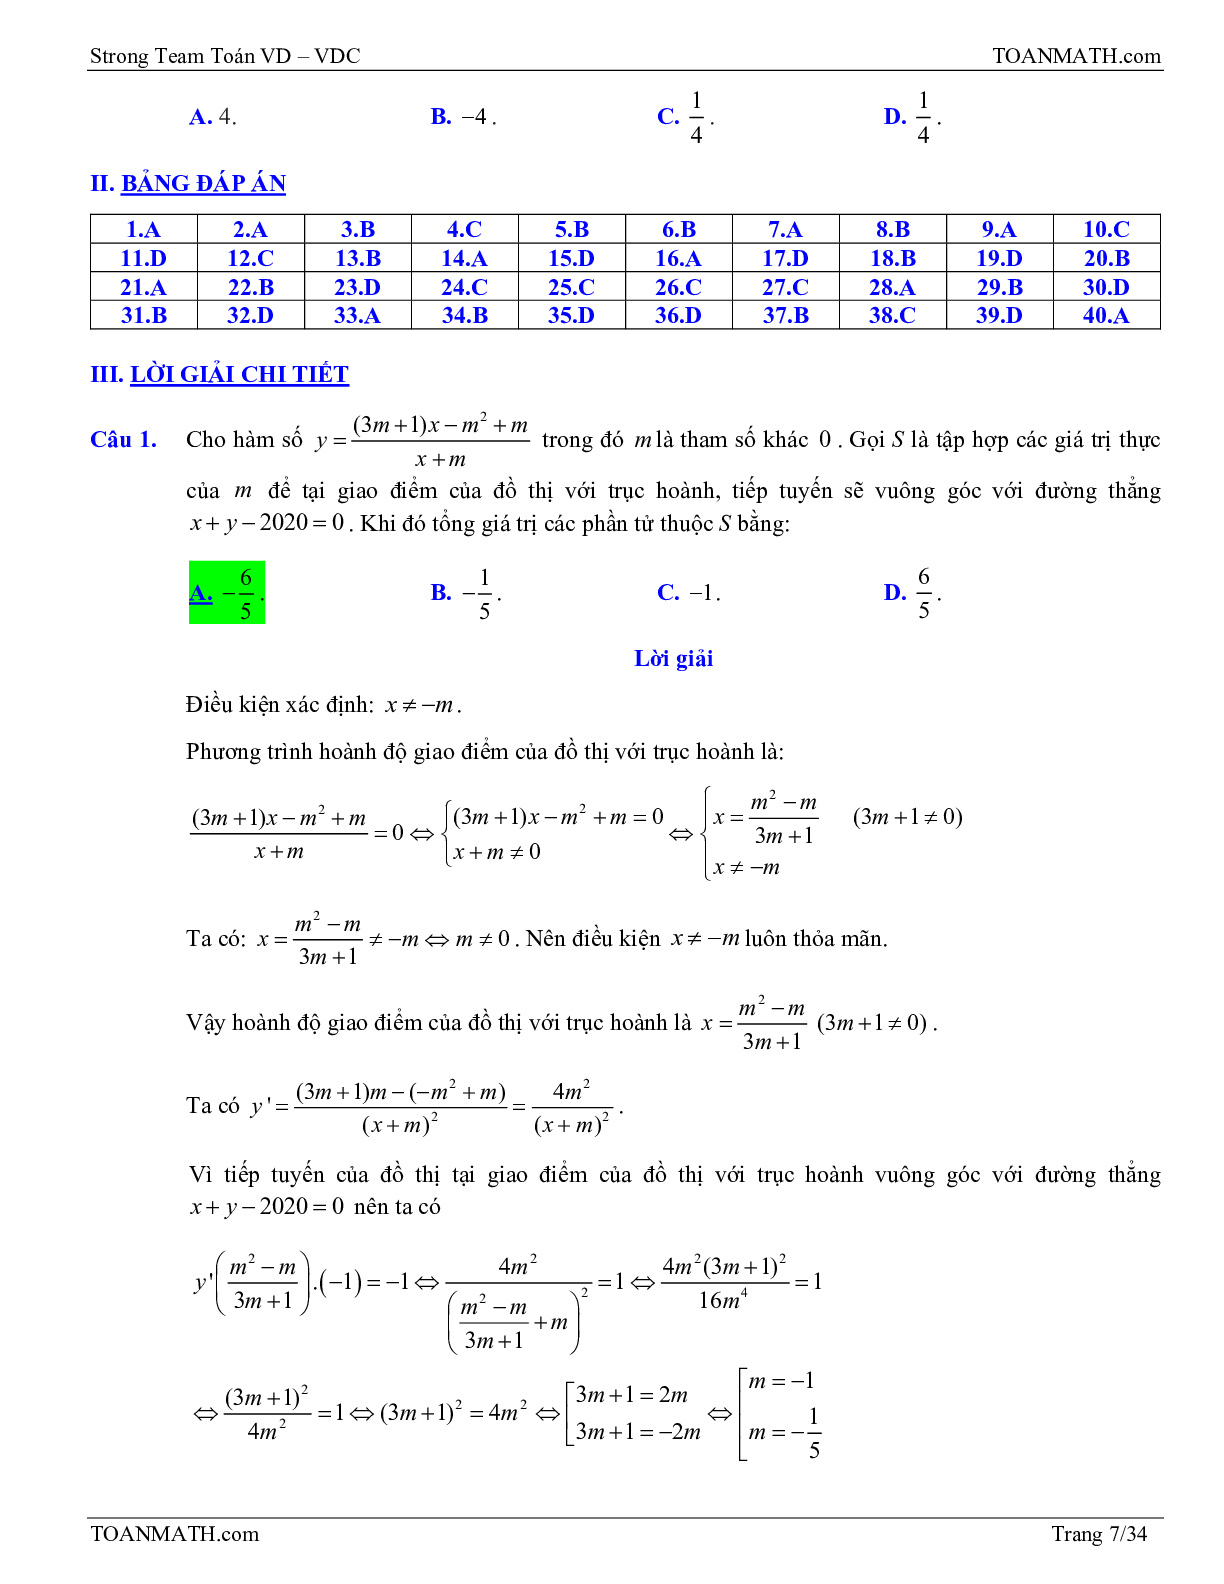 Bài tập VD – VDC tiếp tuyến của đồ thị hàm số có đáp án và lời giải (trang 7)